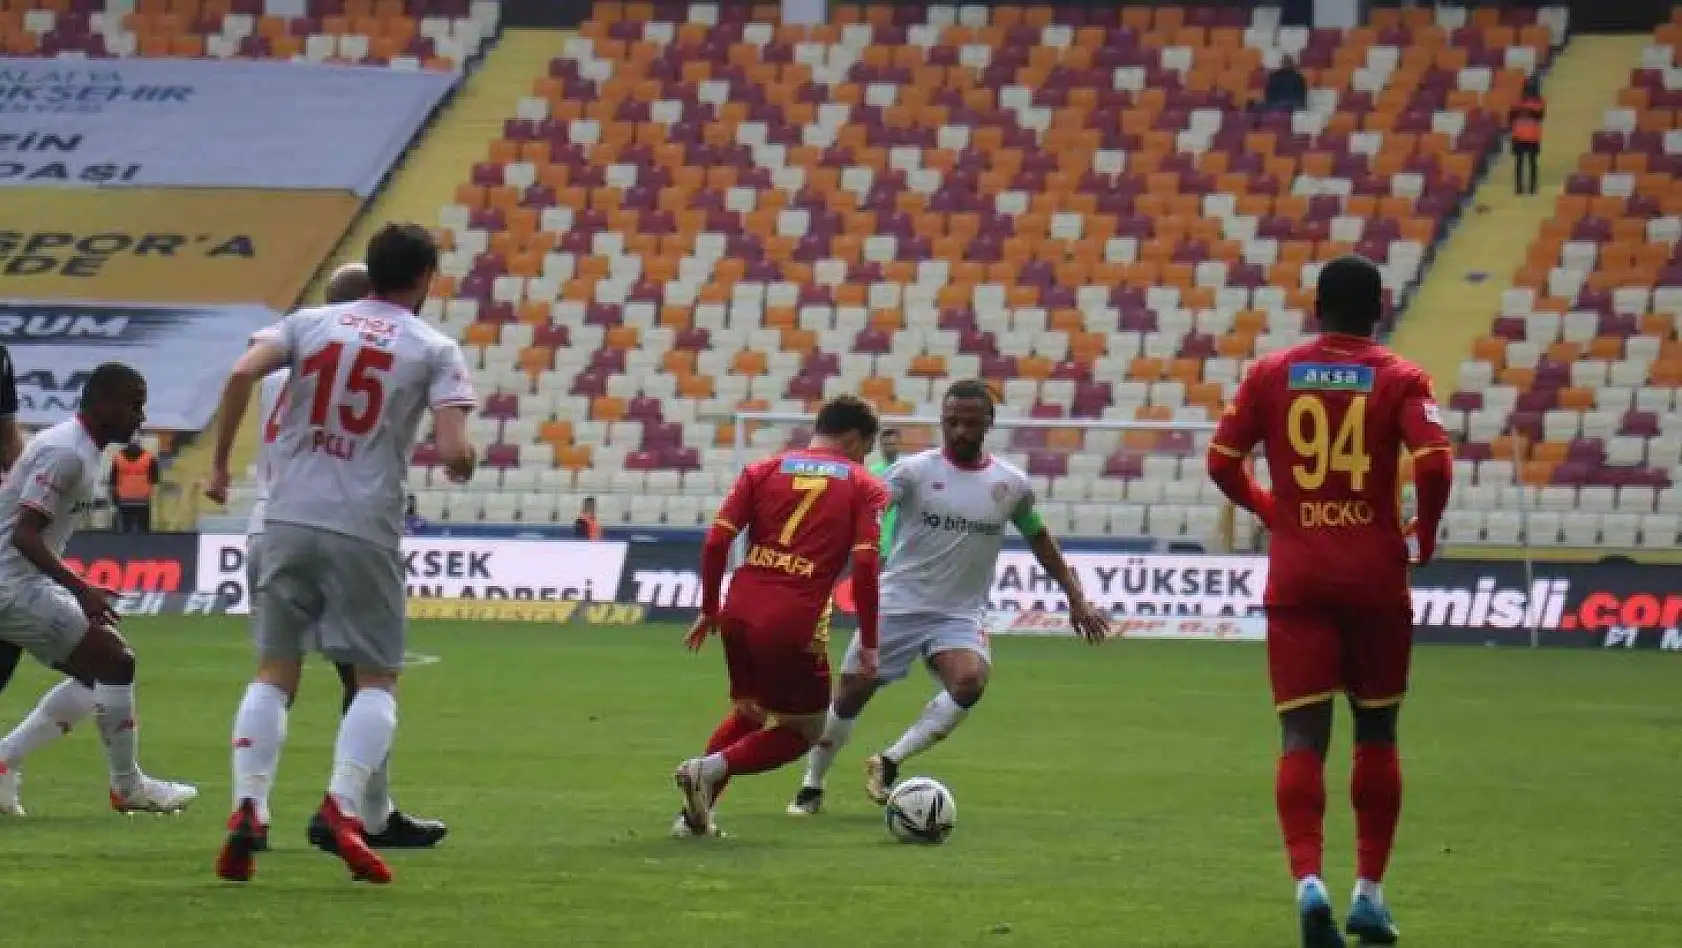 Süper Toto Süper Lig: Yeni Malatyaspor: 0 - Antalyaspor: 1 (İlk yarı)